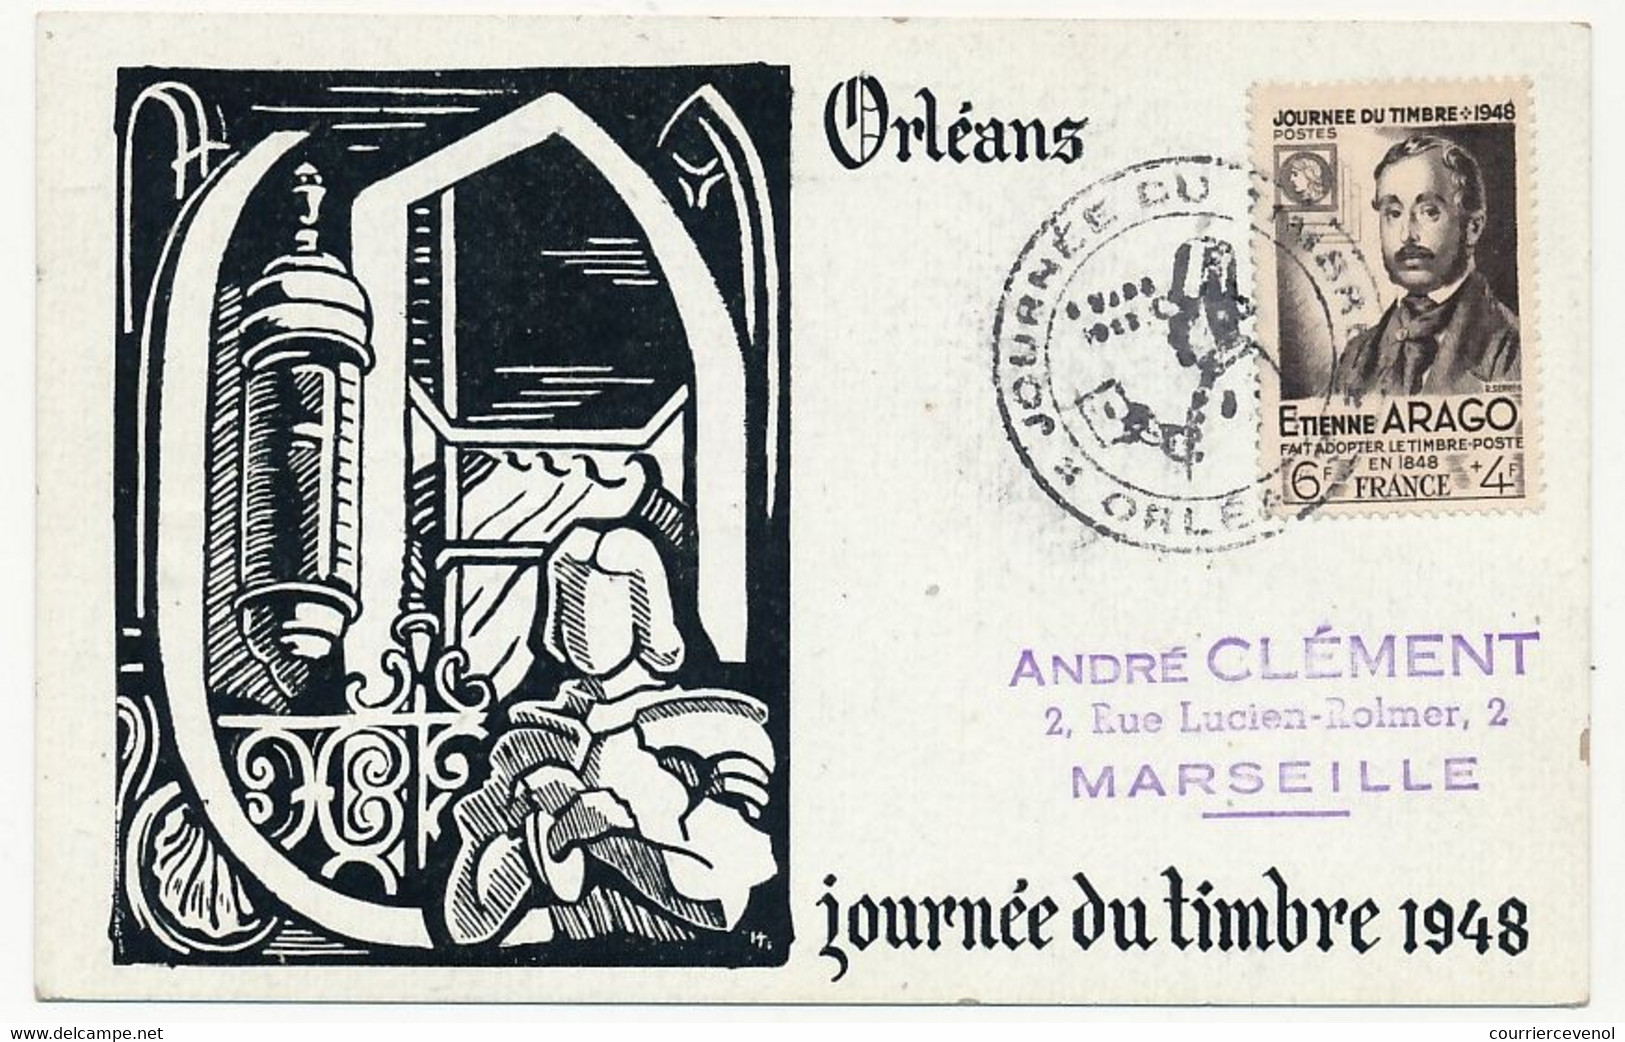 FRANCE => Carte Locale "Journée Du Timbre" 1948 - Timbre 6F + 4F Etienne Arago - ORLEANS 8.3.1948 - Giornata Del Francobollo